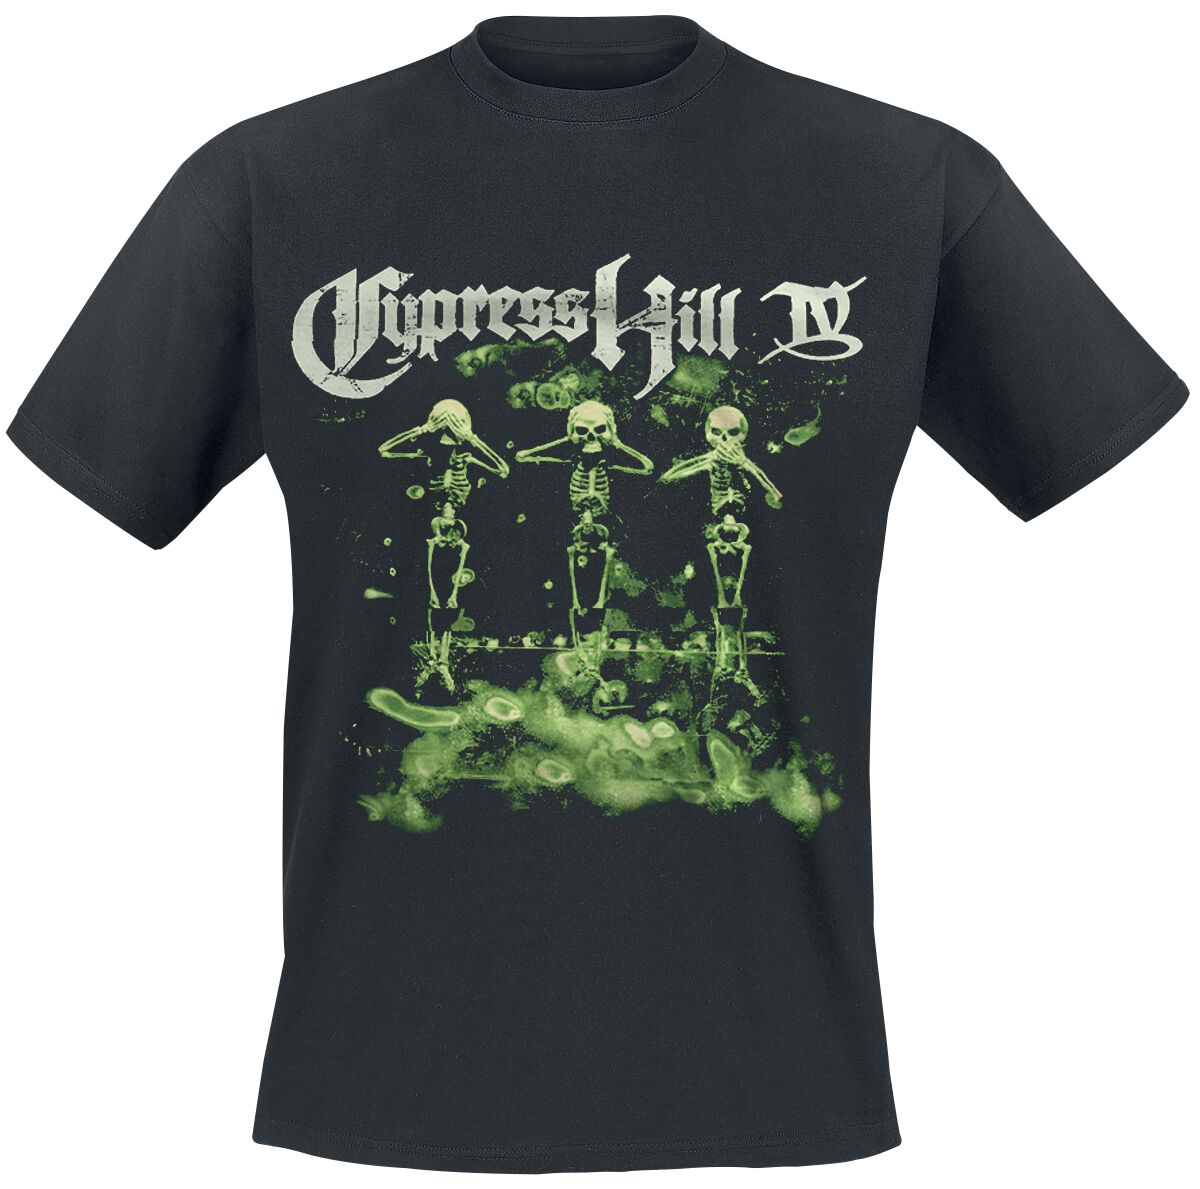 Cypress Hill T-Shirt - IV Album - M bis 5XL - für Männer - Größe 3XL - schwarz  - Lizenziertes Merchandise!